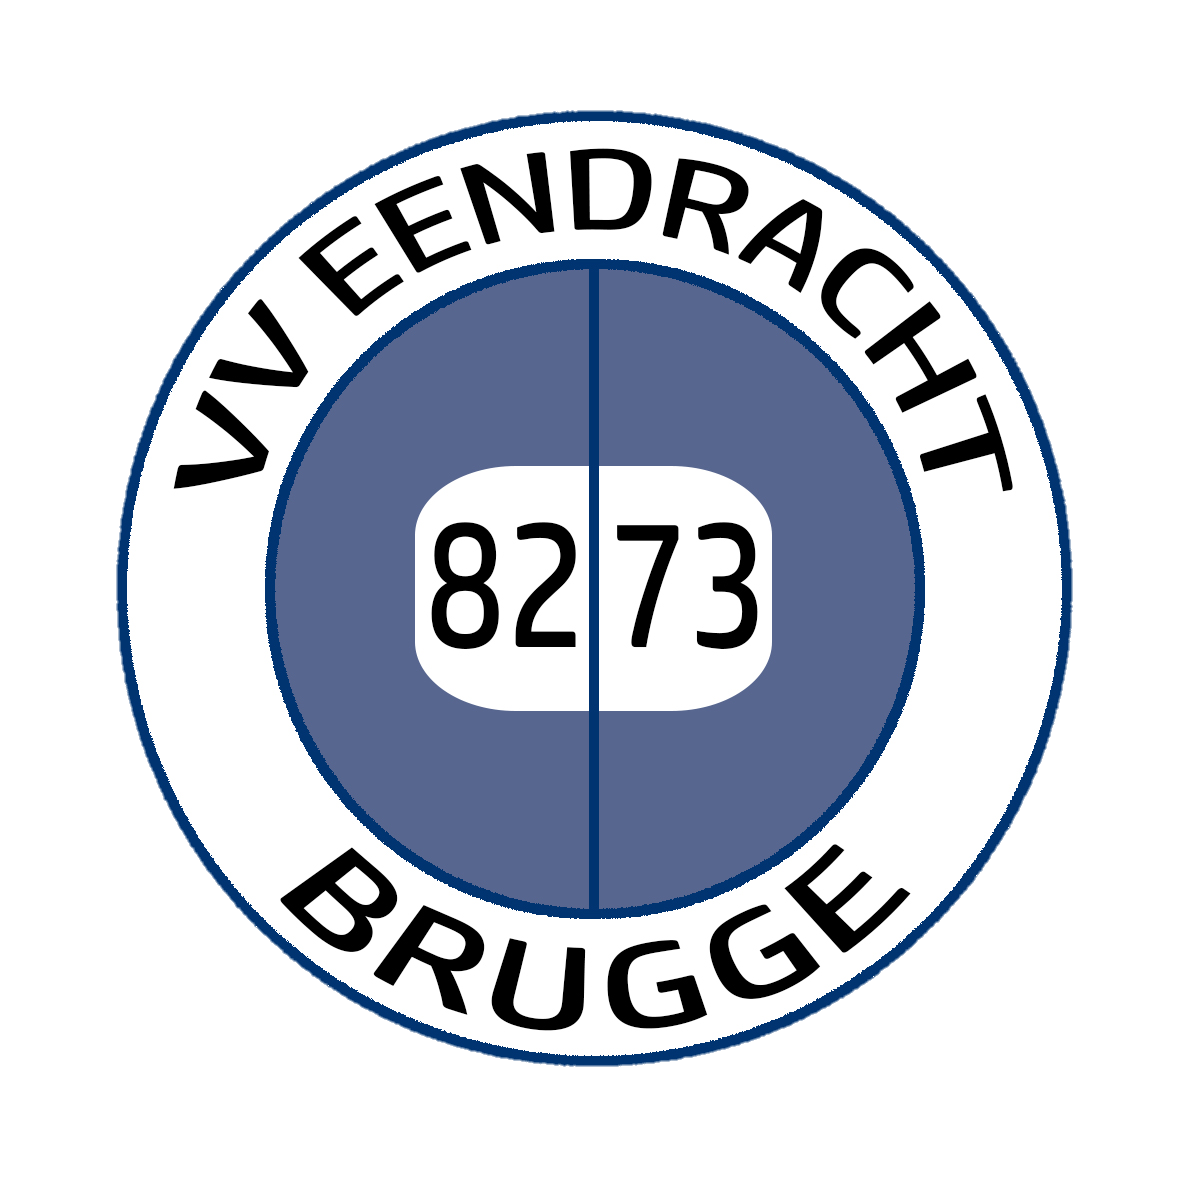 Wappen VV Eendracht Brugge diverse